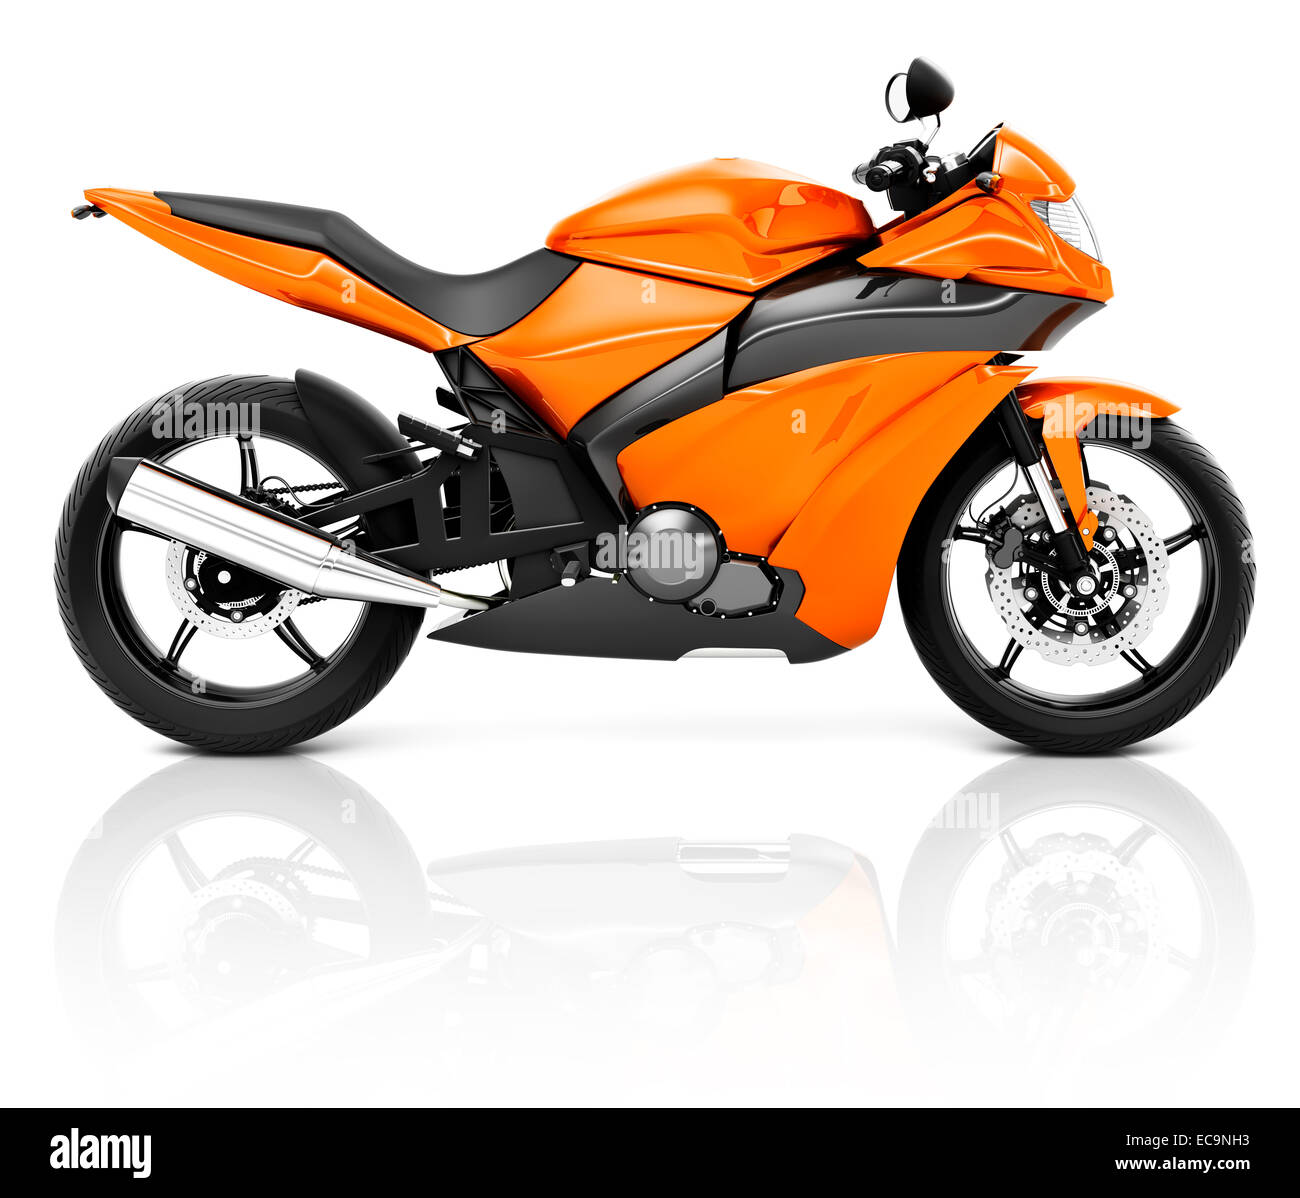 Imagen 3D de una moto moderna naranja Fotografía de stock - Alamy